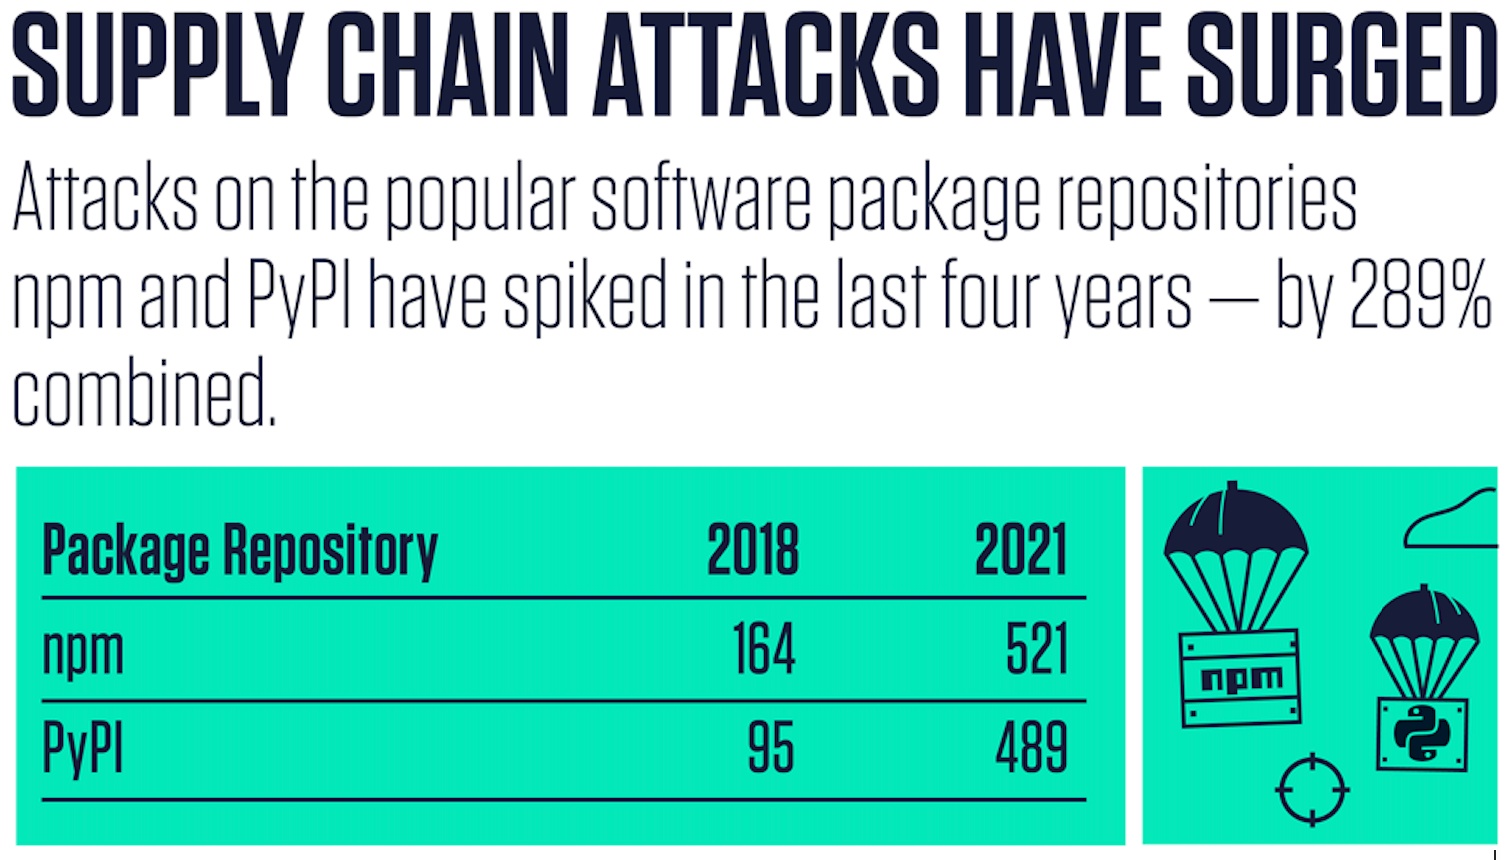 nvd-analysis-supply-chain-attacks-surge